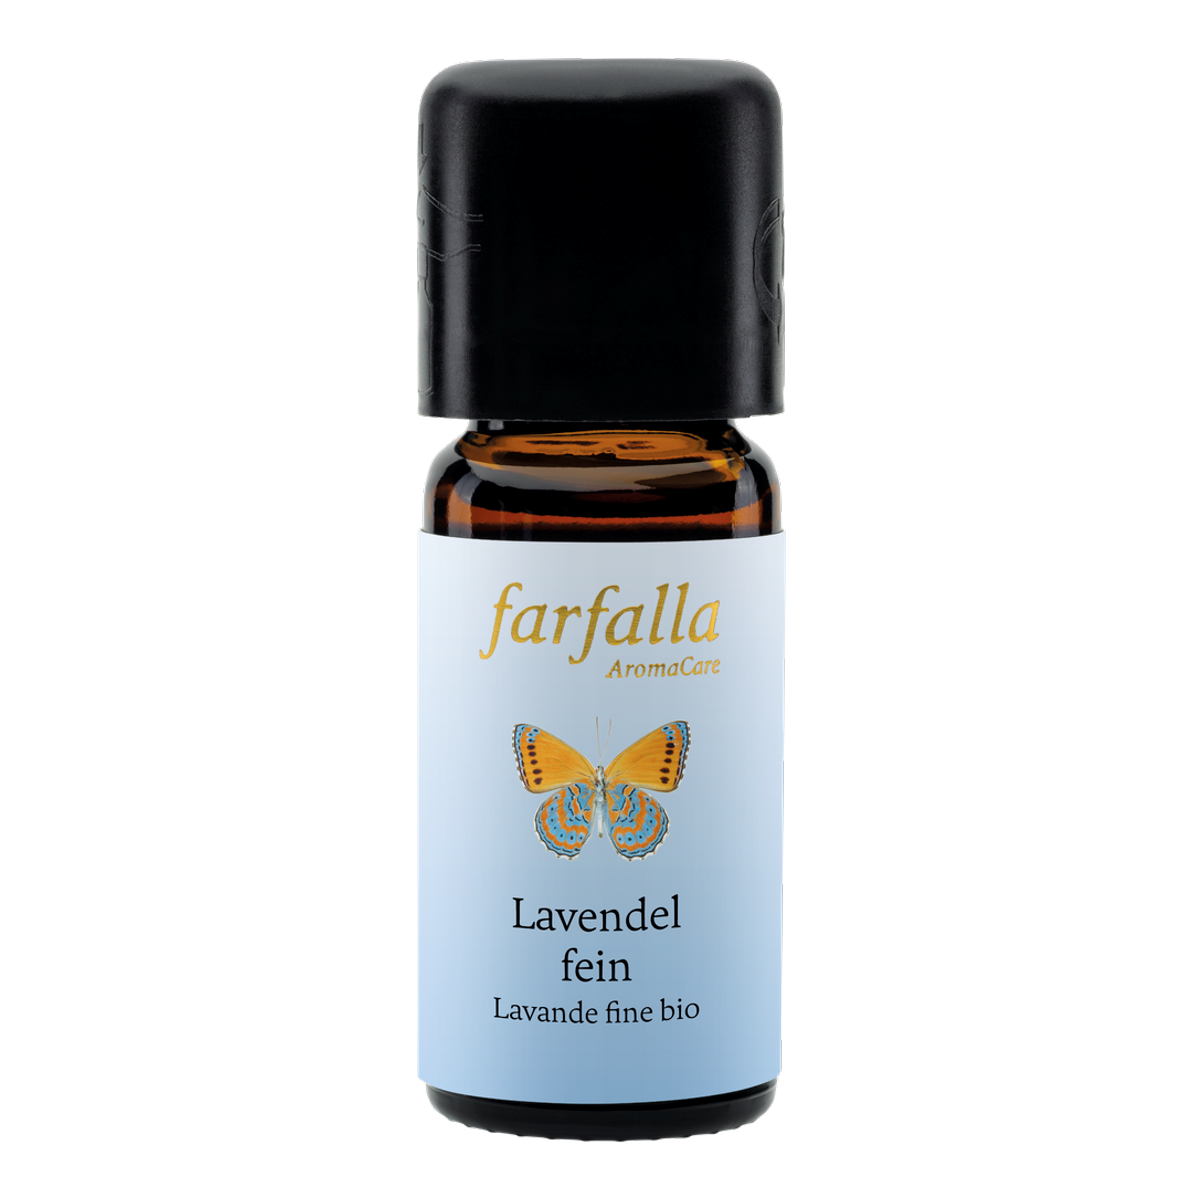 Farfalla Lavendel fein bio, ätherisches Öl